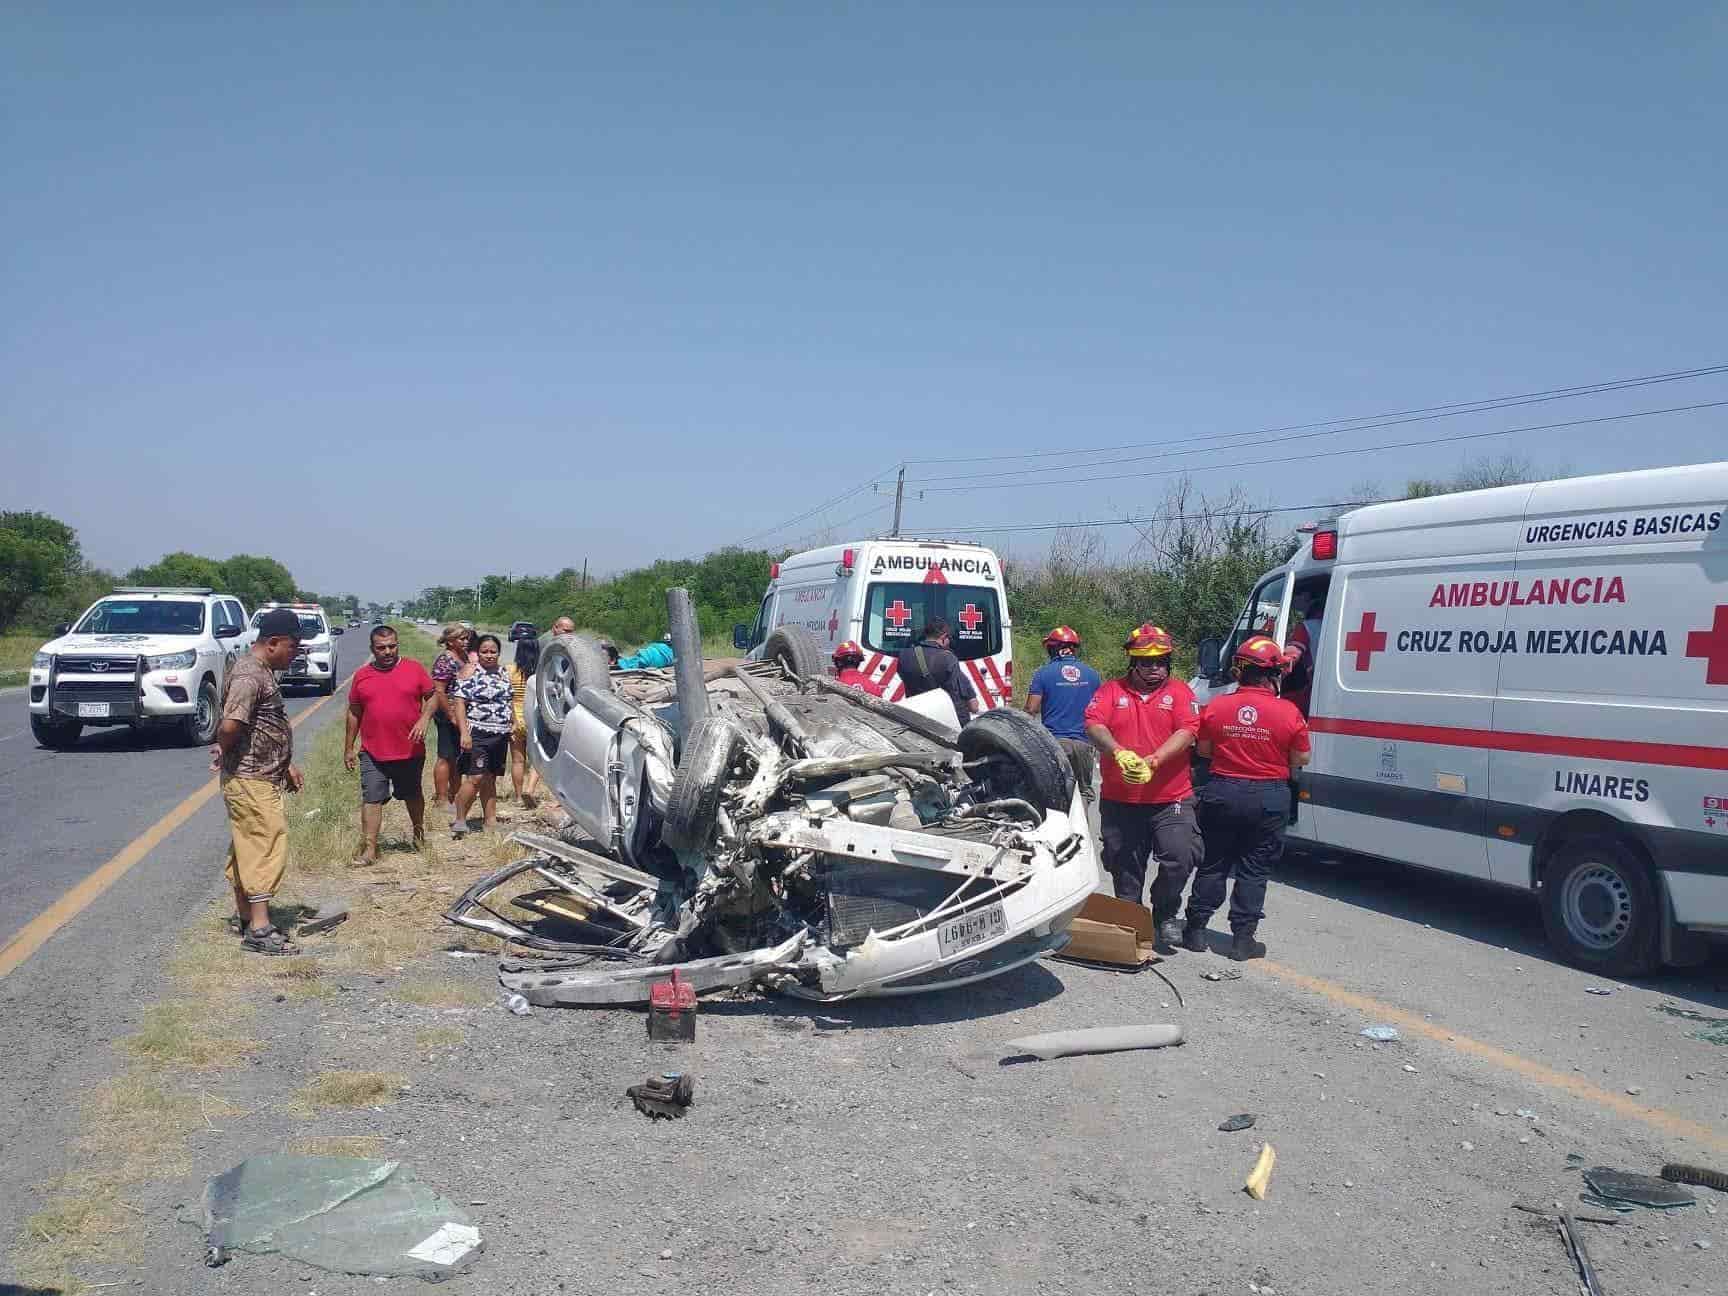 cuatro personas con lesiones de gravedad, fue el saldo que dejó la volcadura de un automóvil, en el municipio de Hualahuises